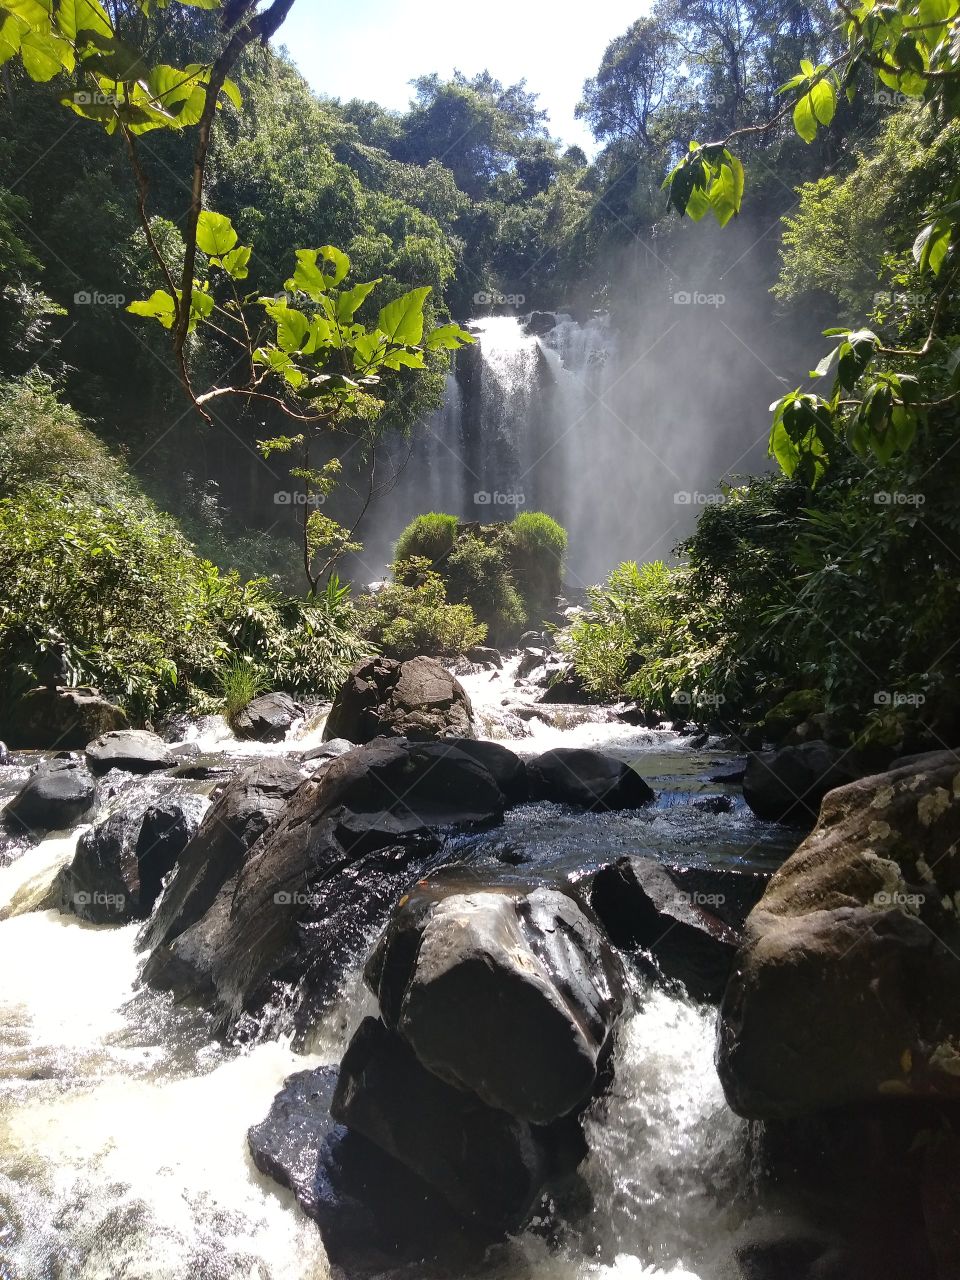 A cascata de Monte Sião se localiza na cidade de Pirassununga, interior de São Paulo. Uma paisagem singular e inesquecível. A visão lembra um bosque encantado, rende boas fotos, mas estar frente à paisagem nem se compara ao click da câmera ♡